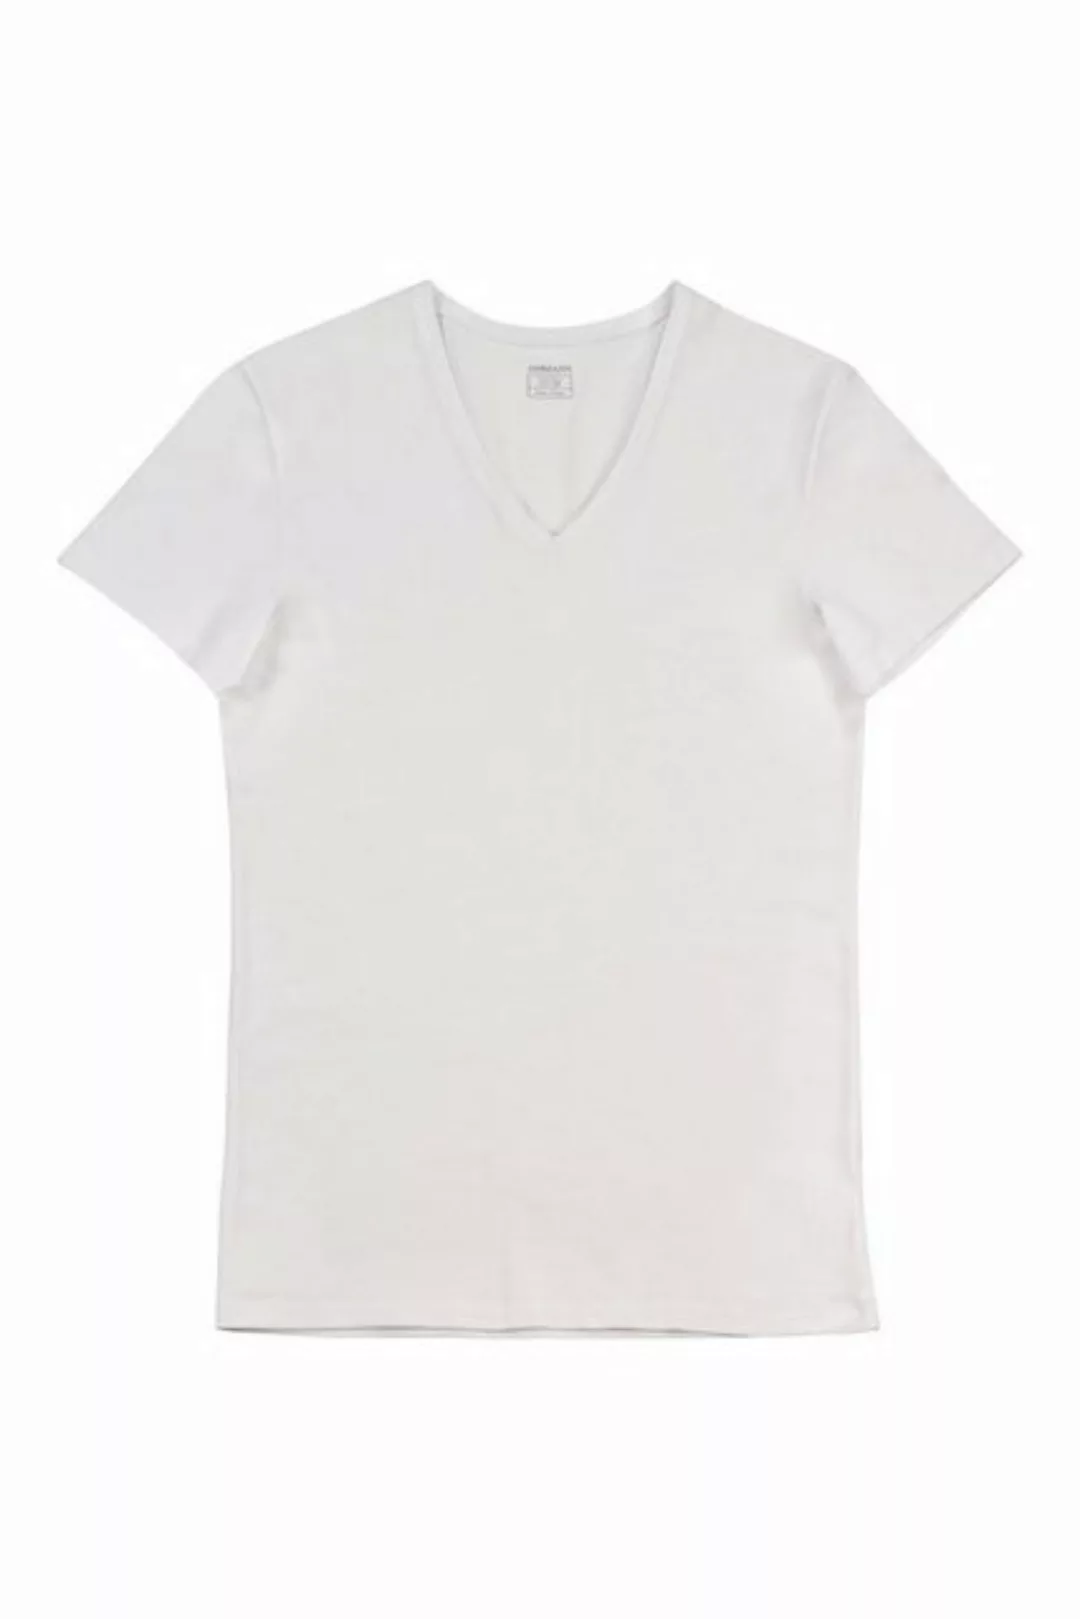 Ammann Kurzarmshirt V-Shirt Bio-Baumwolle 11466 günstig online kaufen